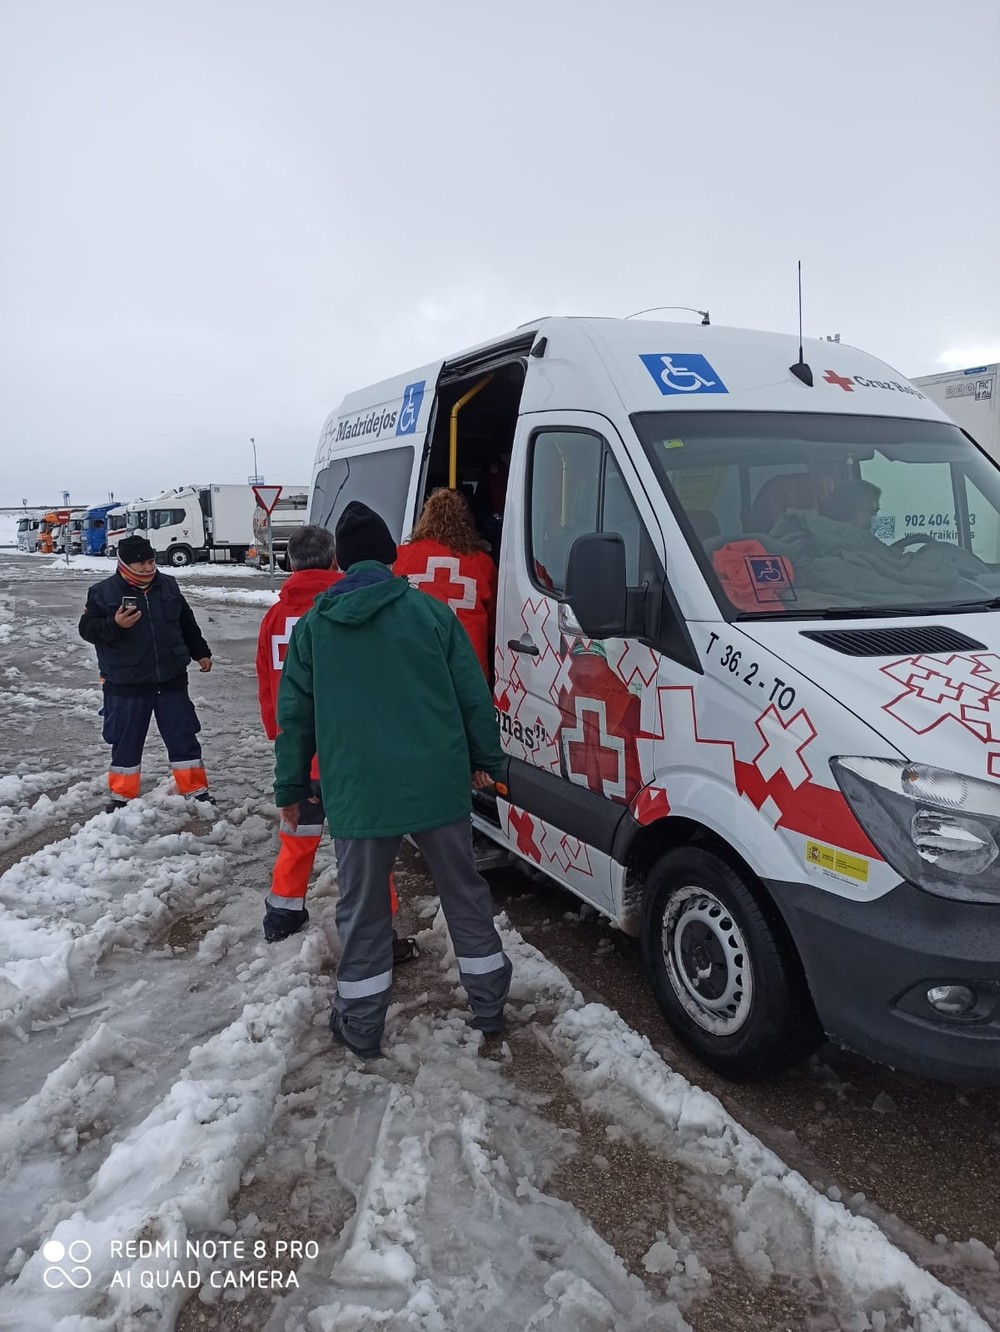 Cruz Roja acerca alimentos a 170 camioneros parados en la A4